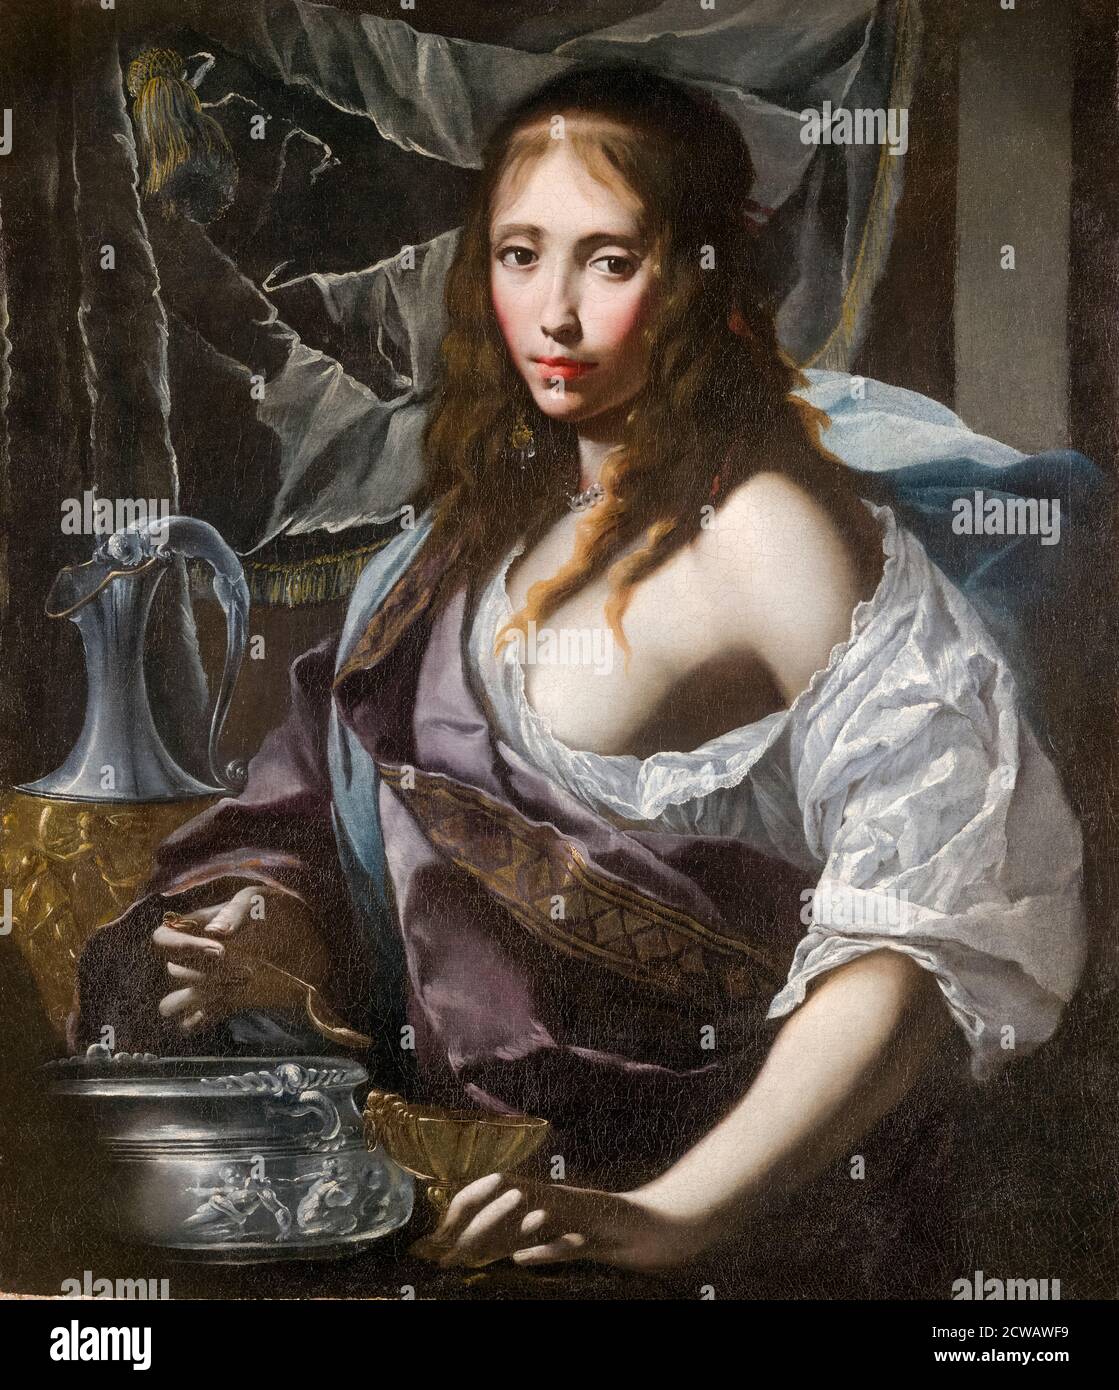 Artemisia se prepara para beber las cenizas de su marido Mausolus, pintura de Francesco Furini, alrededor de 1630 Foto de stock